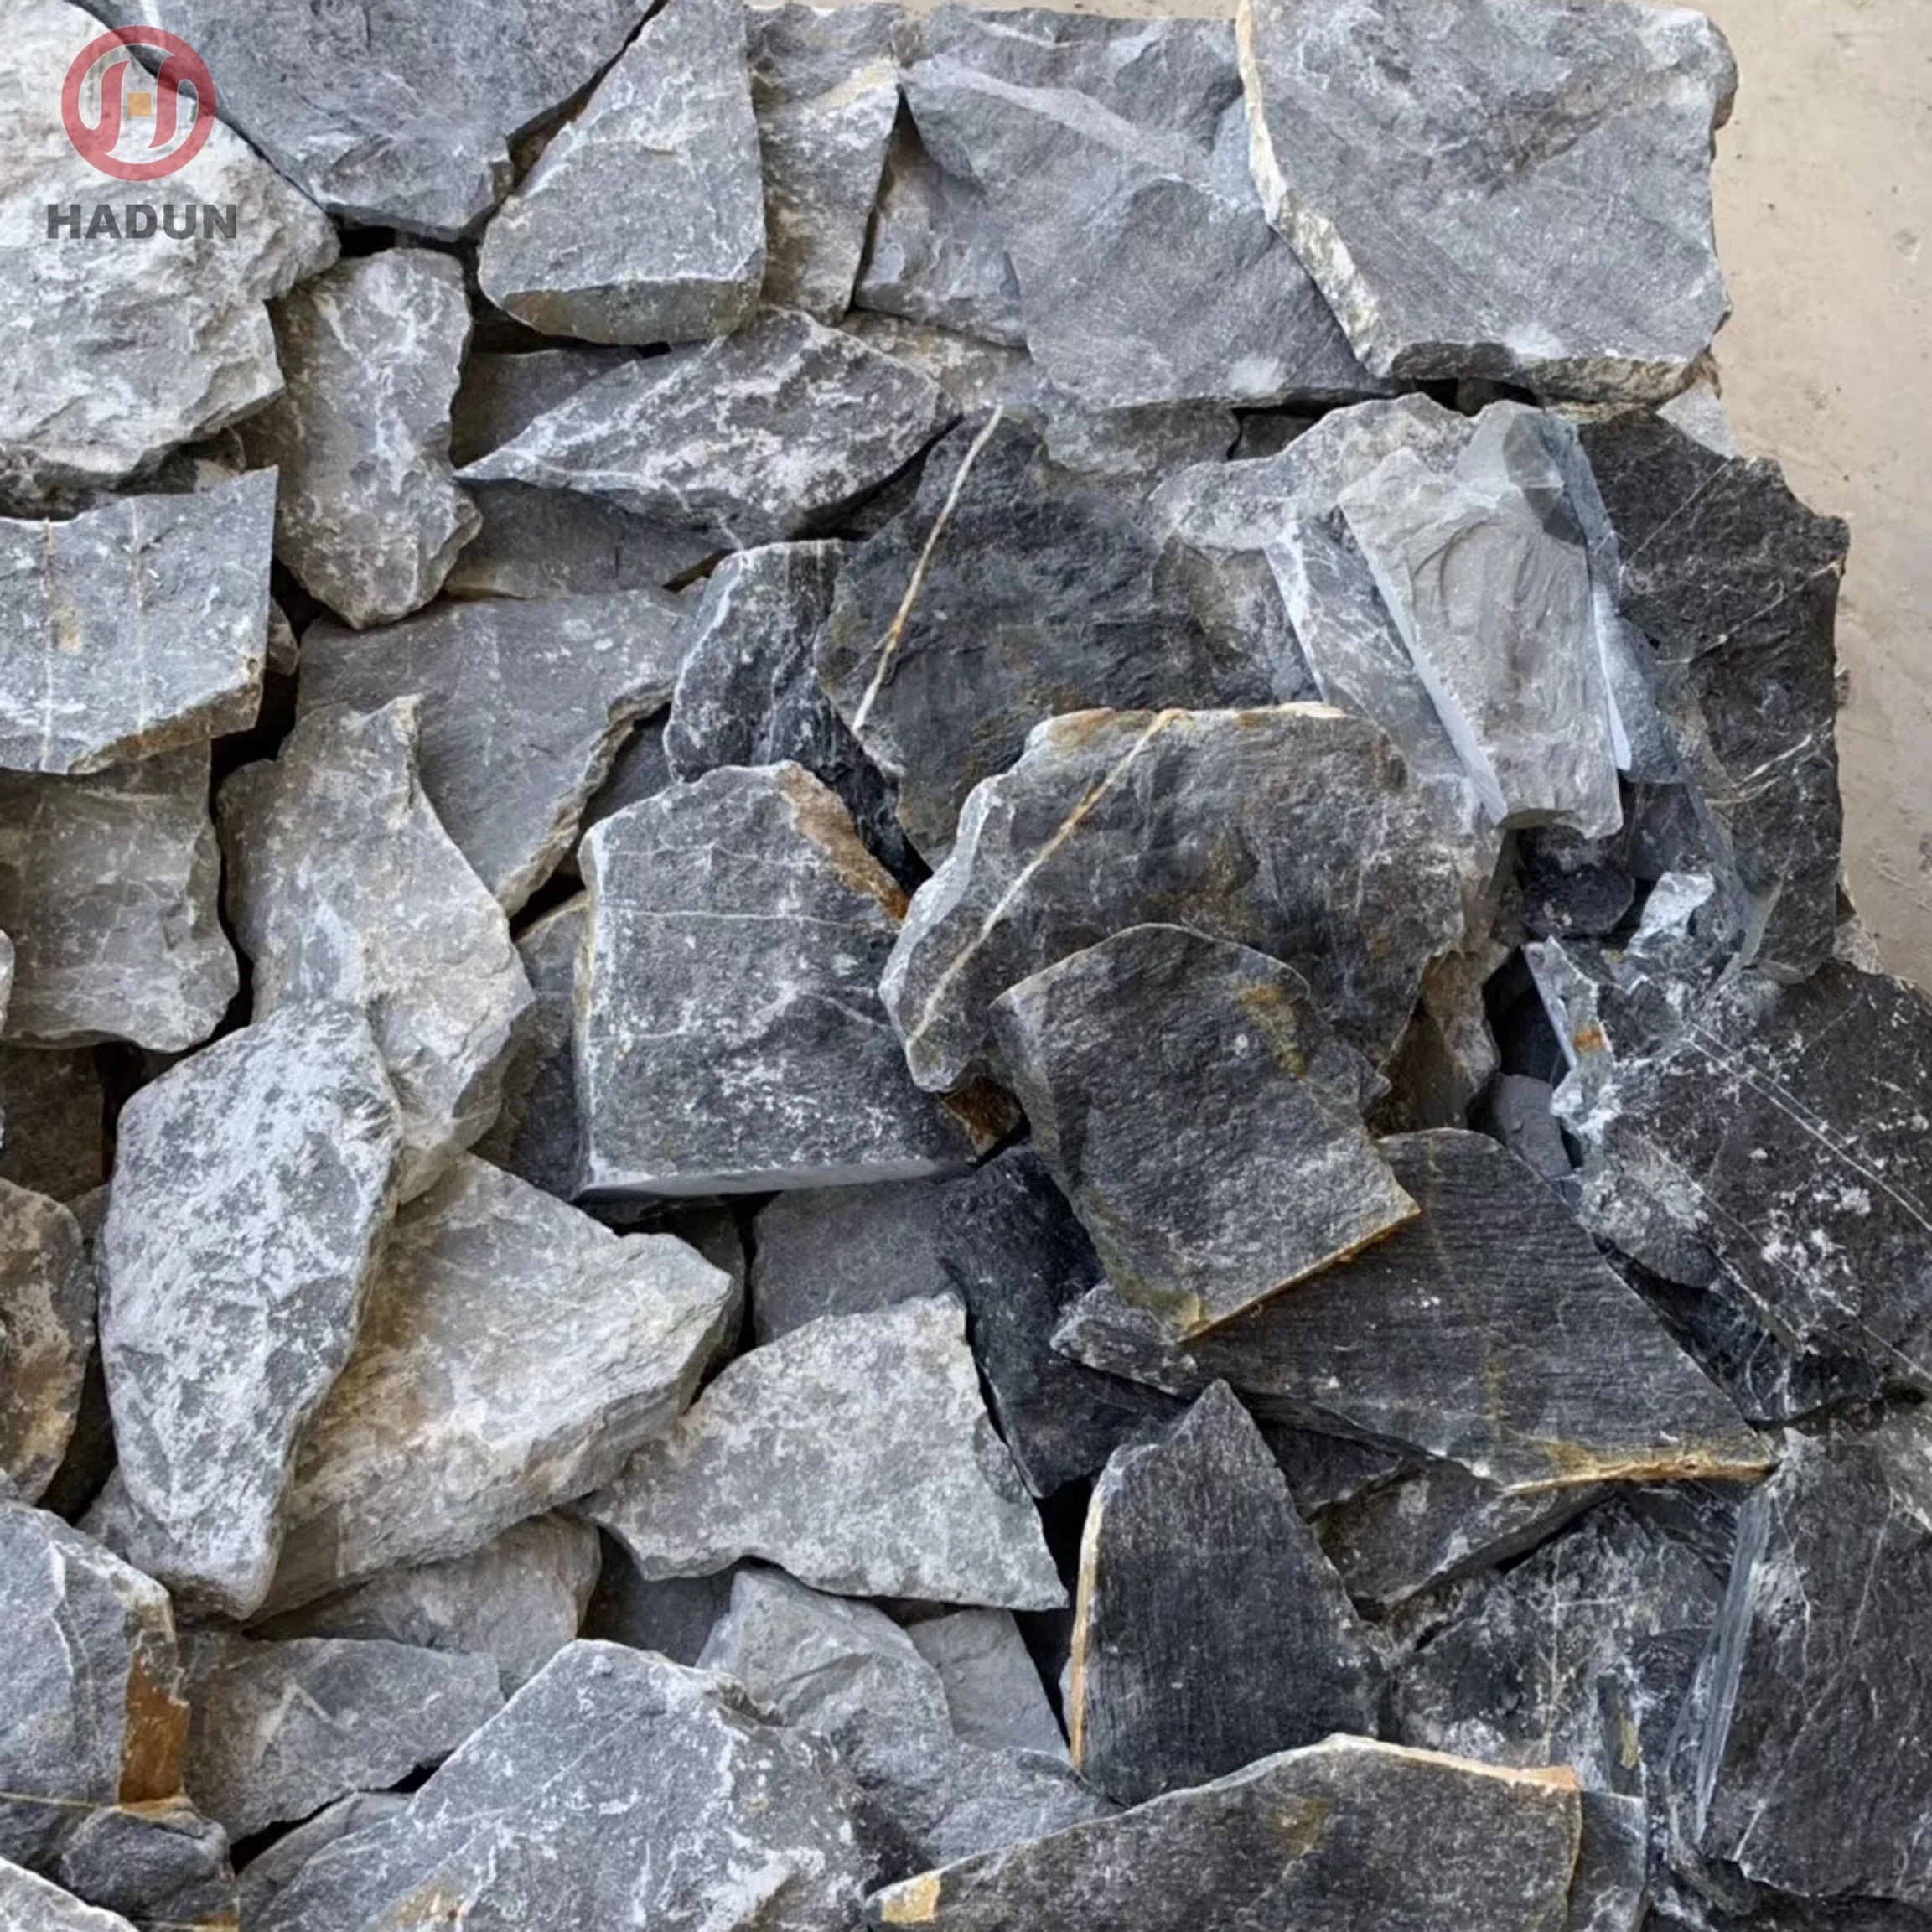 蓝色石灰石文化松散石材用于墙面 材料: 天然石材/天然石板/天然石英